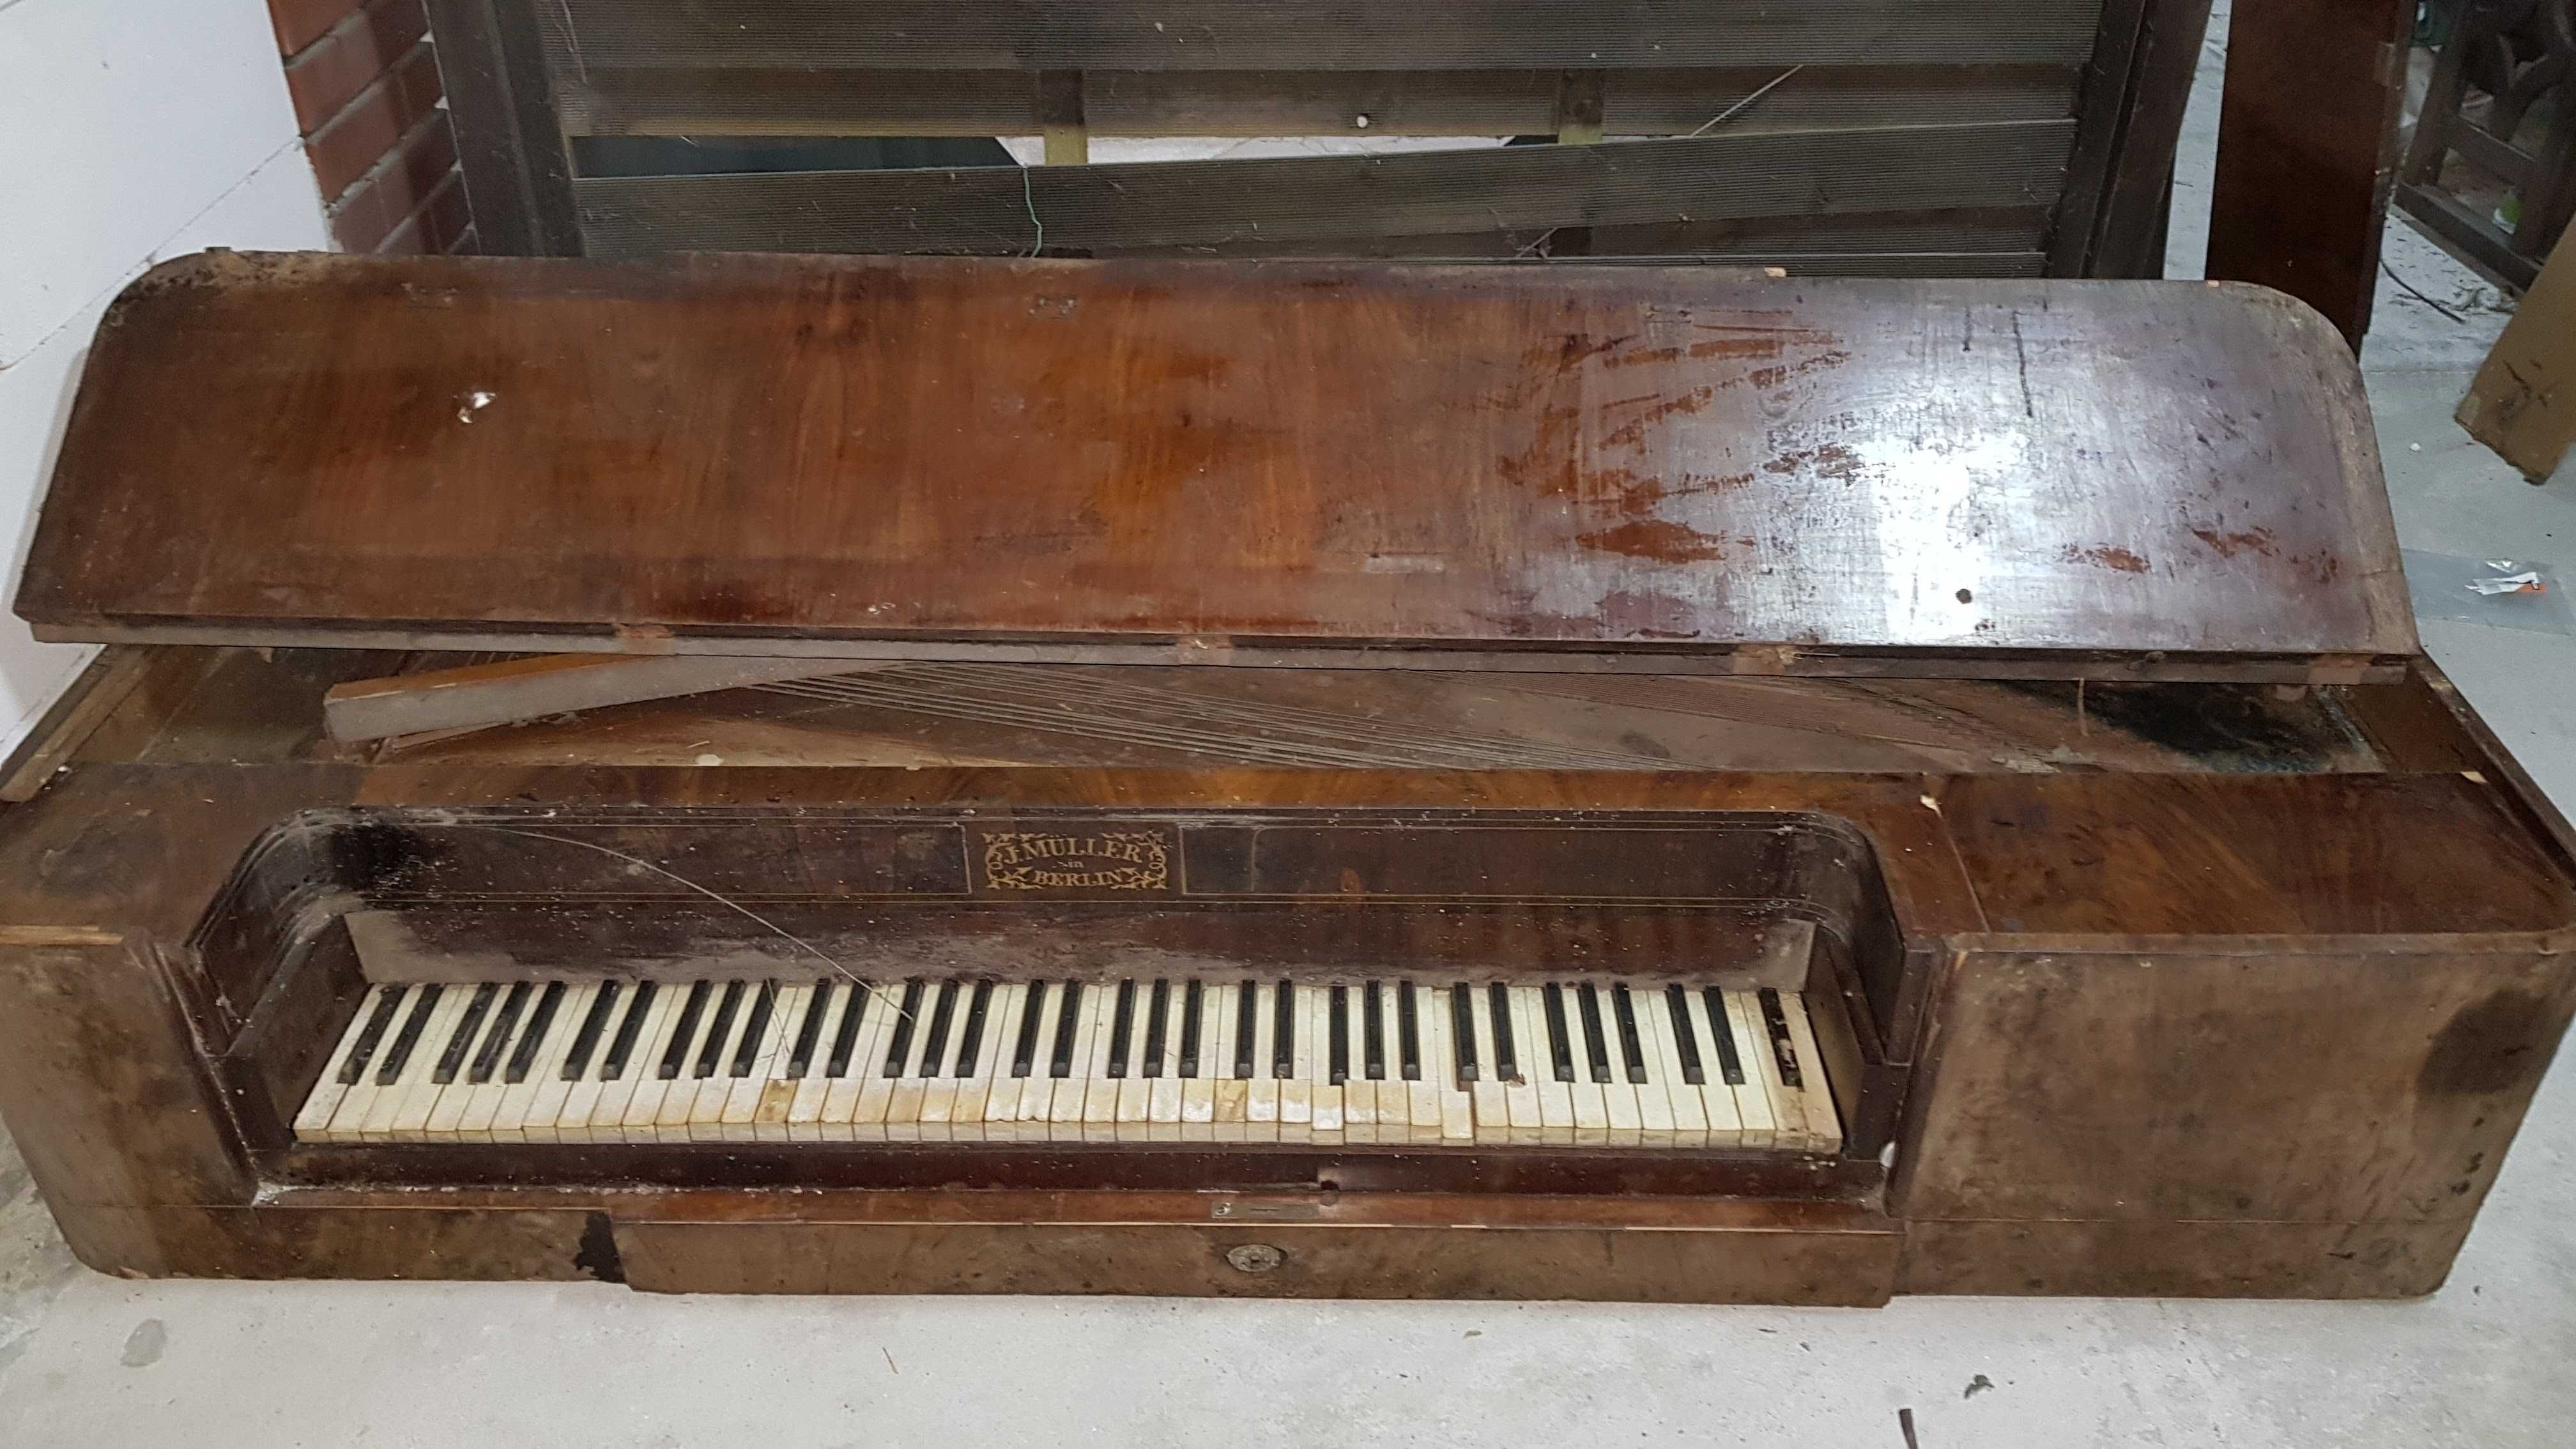 Fortepian stołowy do renowacji, klawisze oryginalne z tamtego okresu.